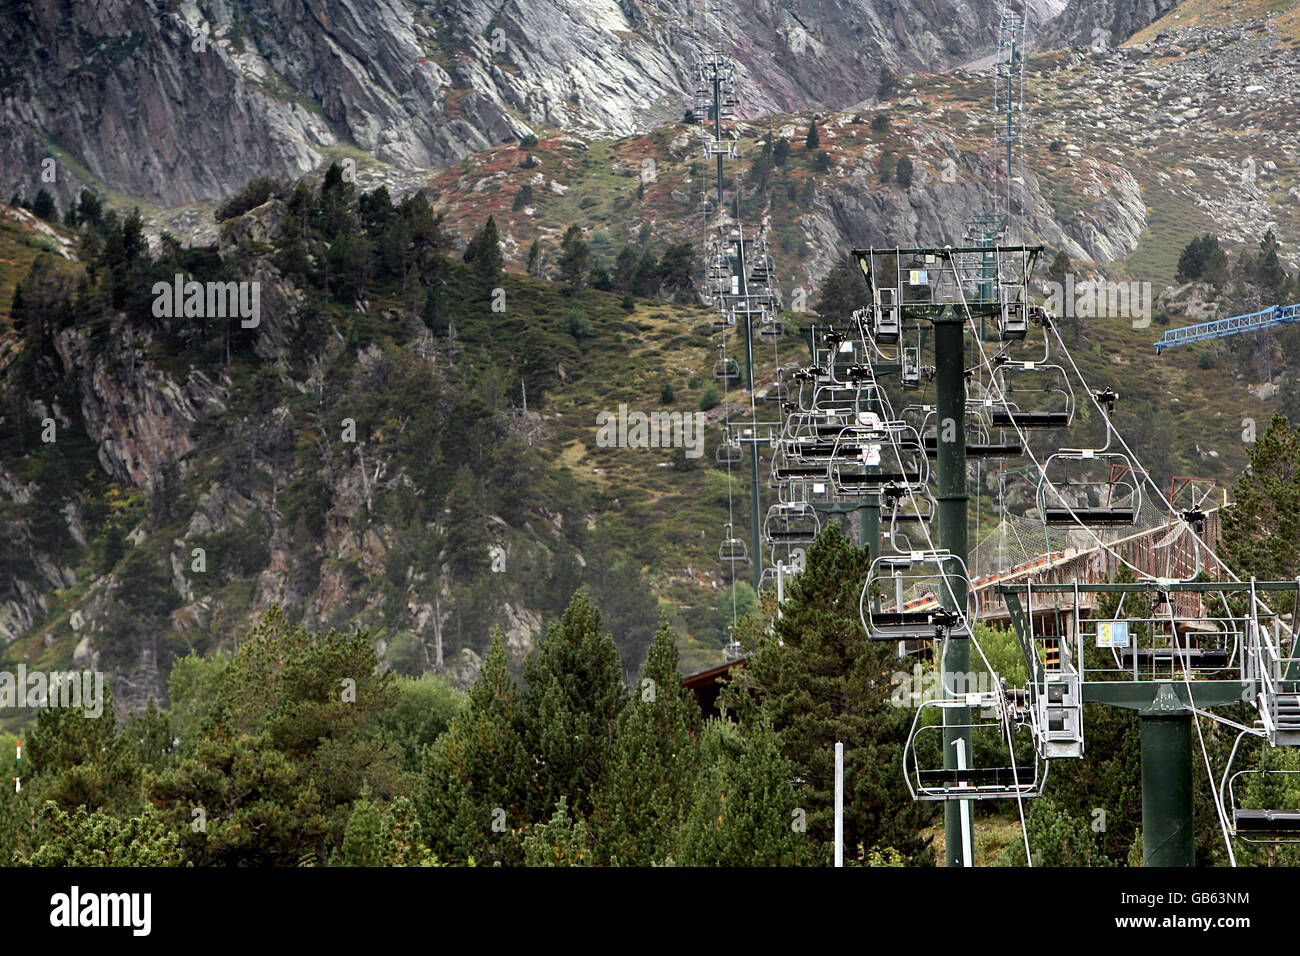 General Stock - Andorra Landschaftsansichten - L'abarsetar, Andorra. Seilbahnen durchtrennen die Pyrenäen in der Nähe von L'abarsetar, Andorra Stockfoto